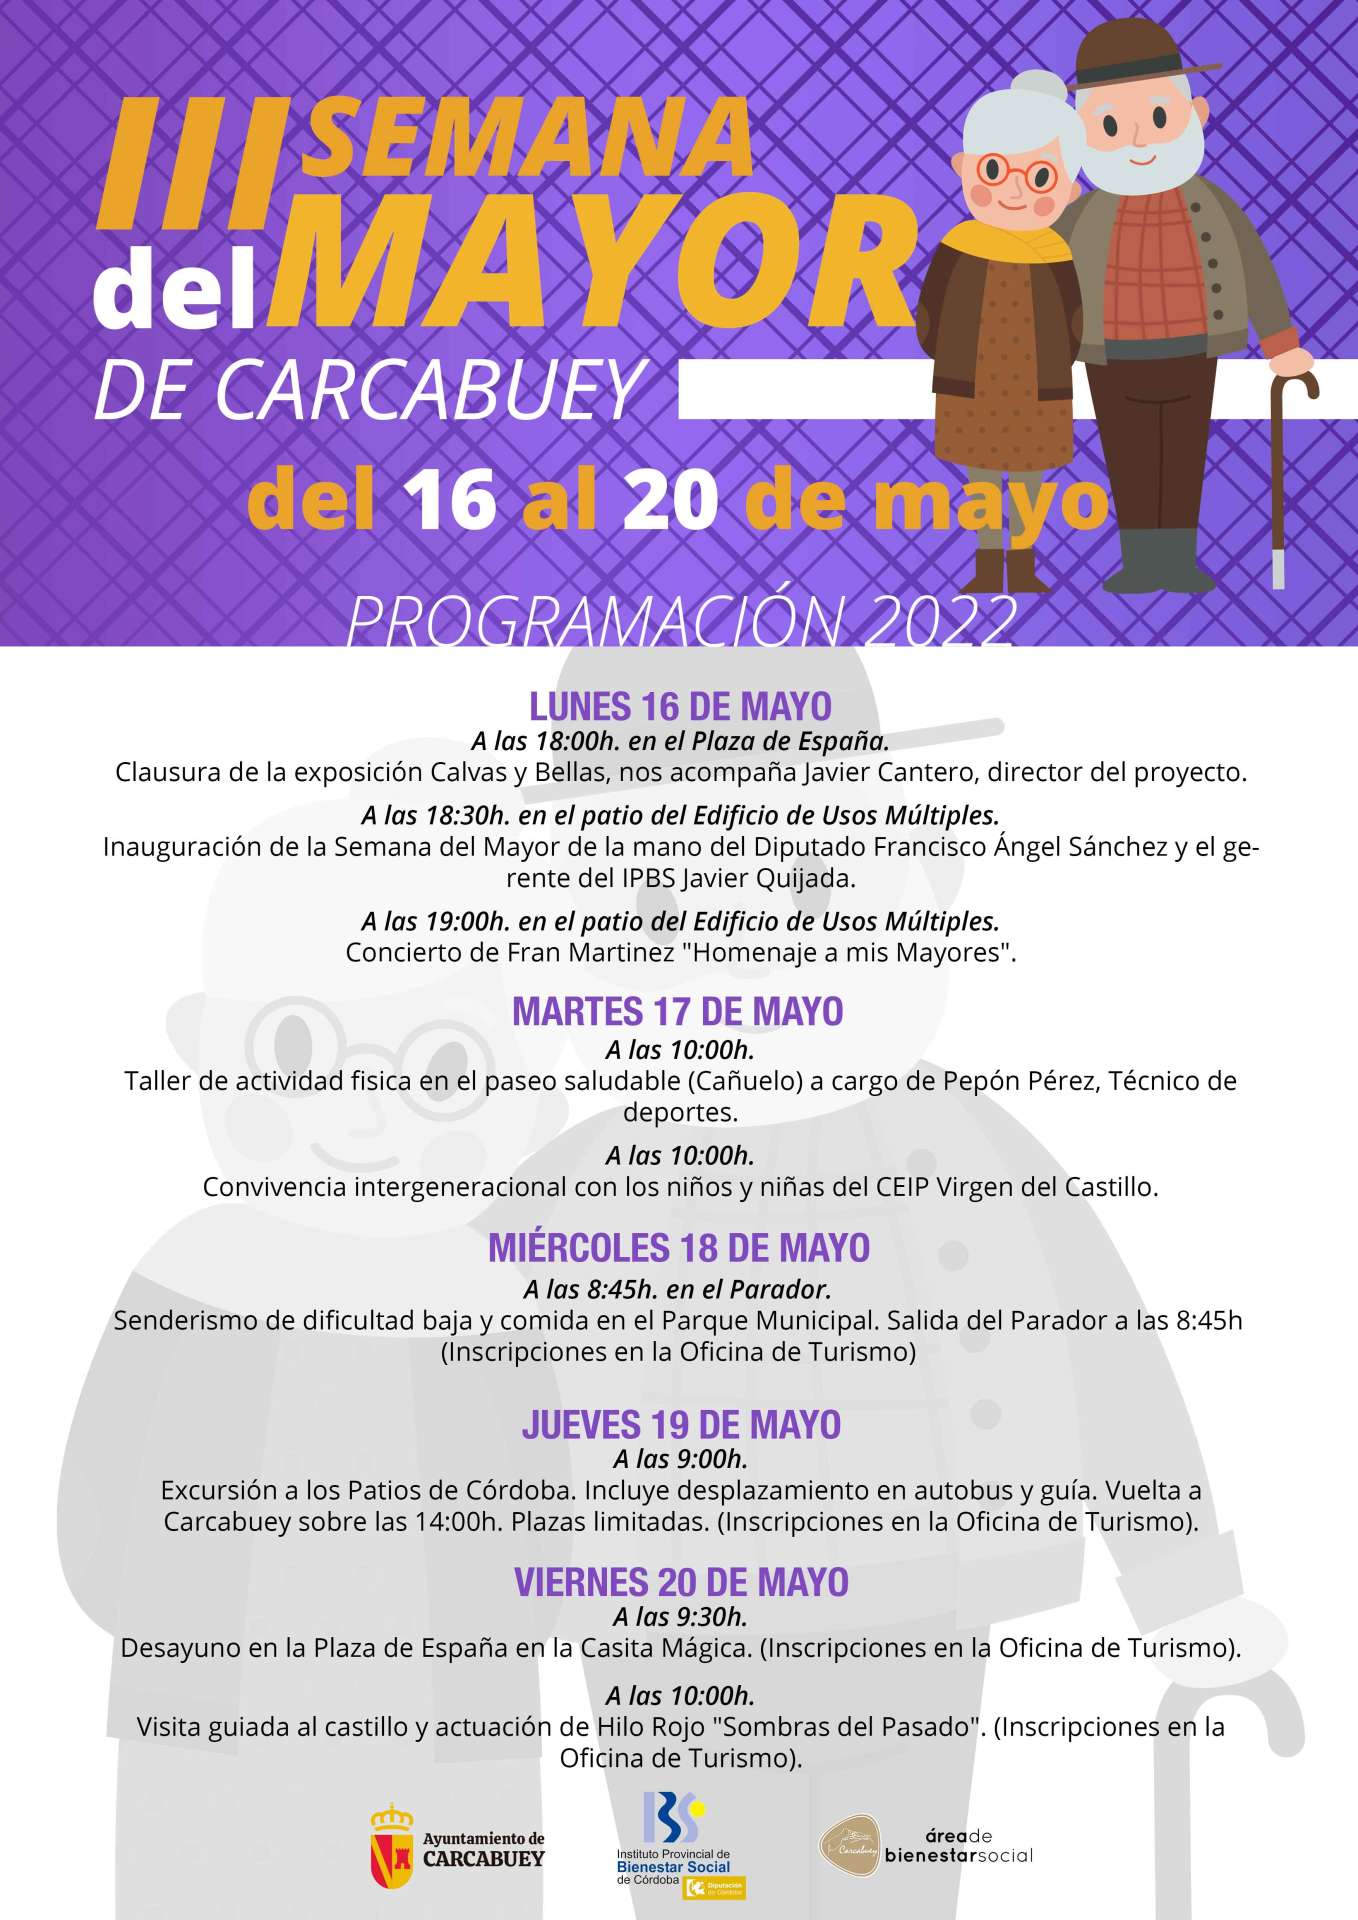 III SEMANA DEL MAYOR DE CARCABUEY